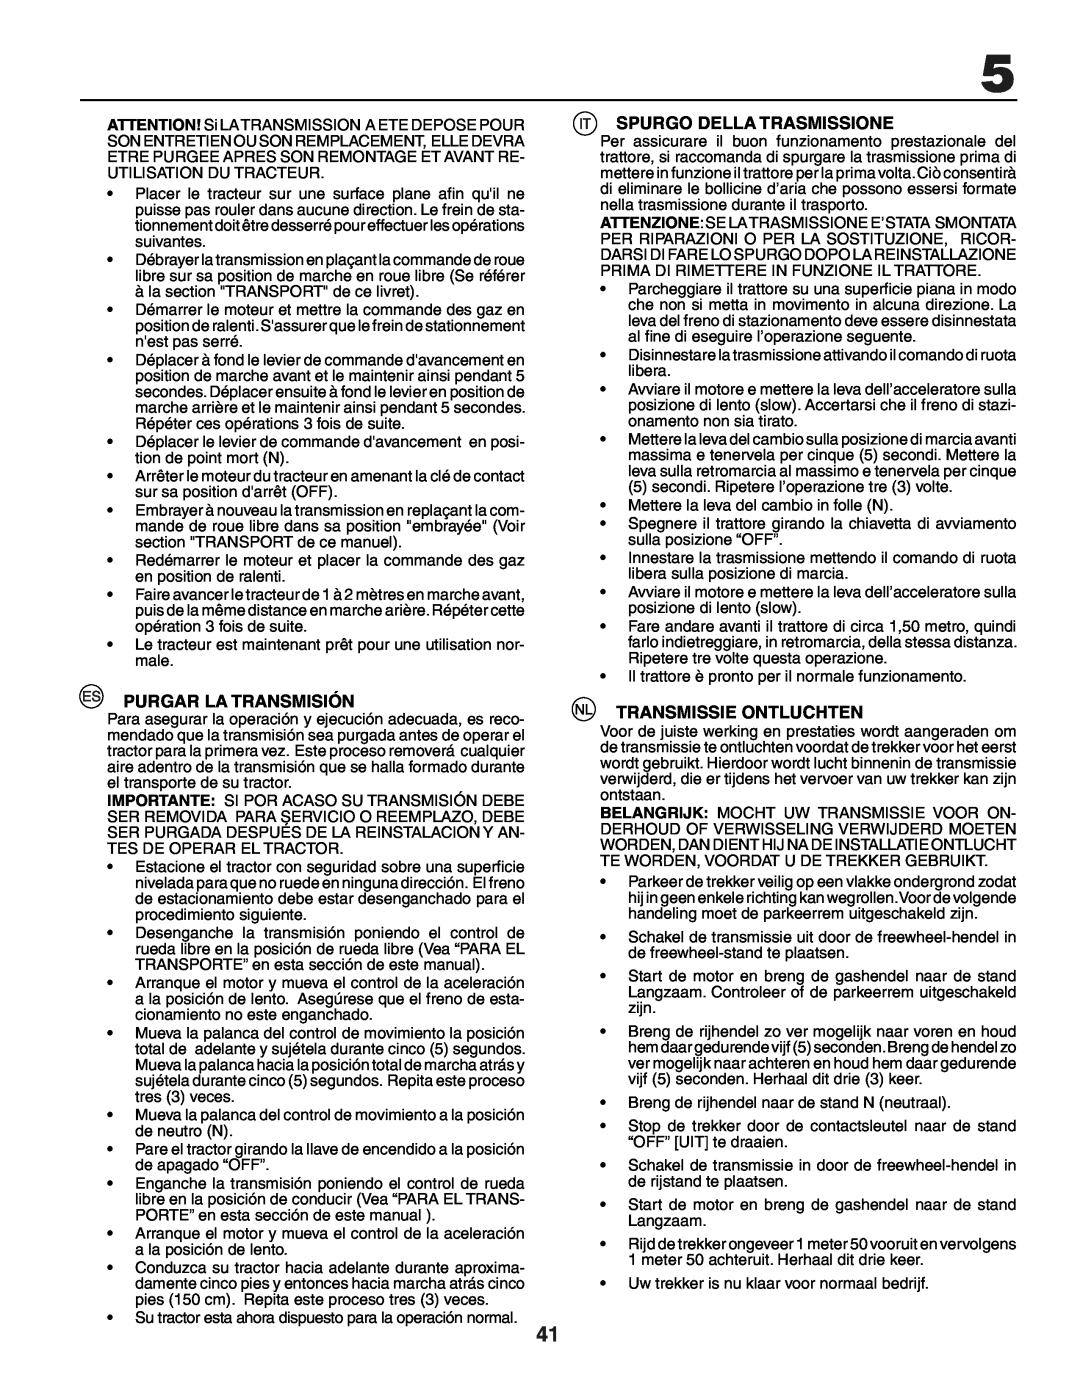 Husqvarna YTH150XP instruction manual Purgar La Transmisión, Spurgo Della Trasmissione, Transmissie Ontluchten 